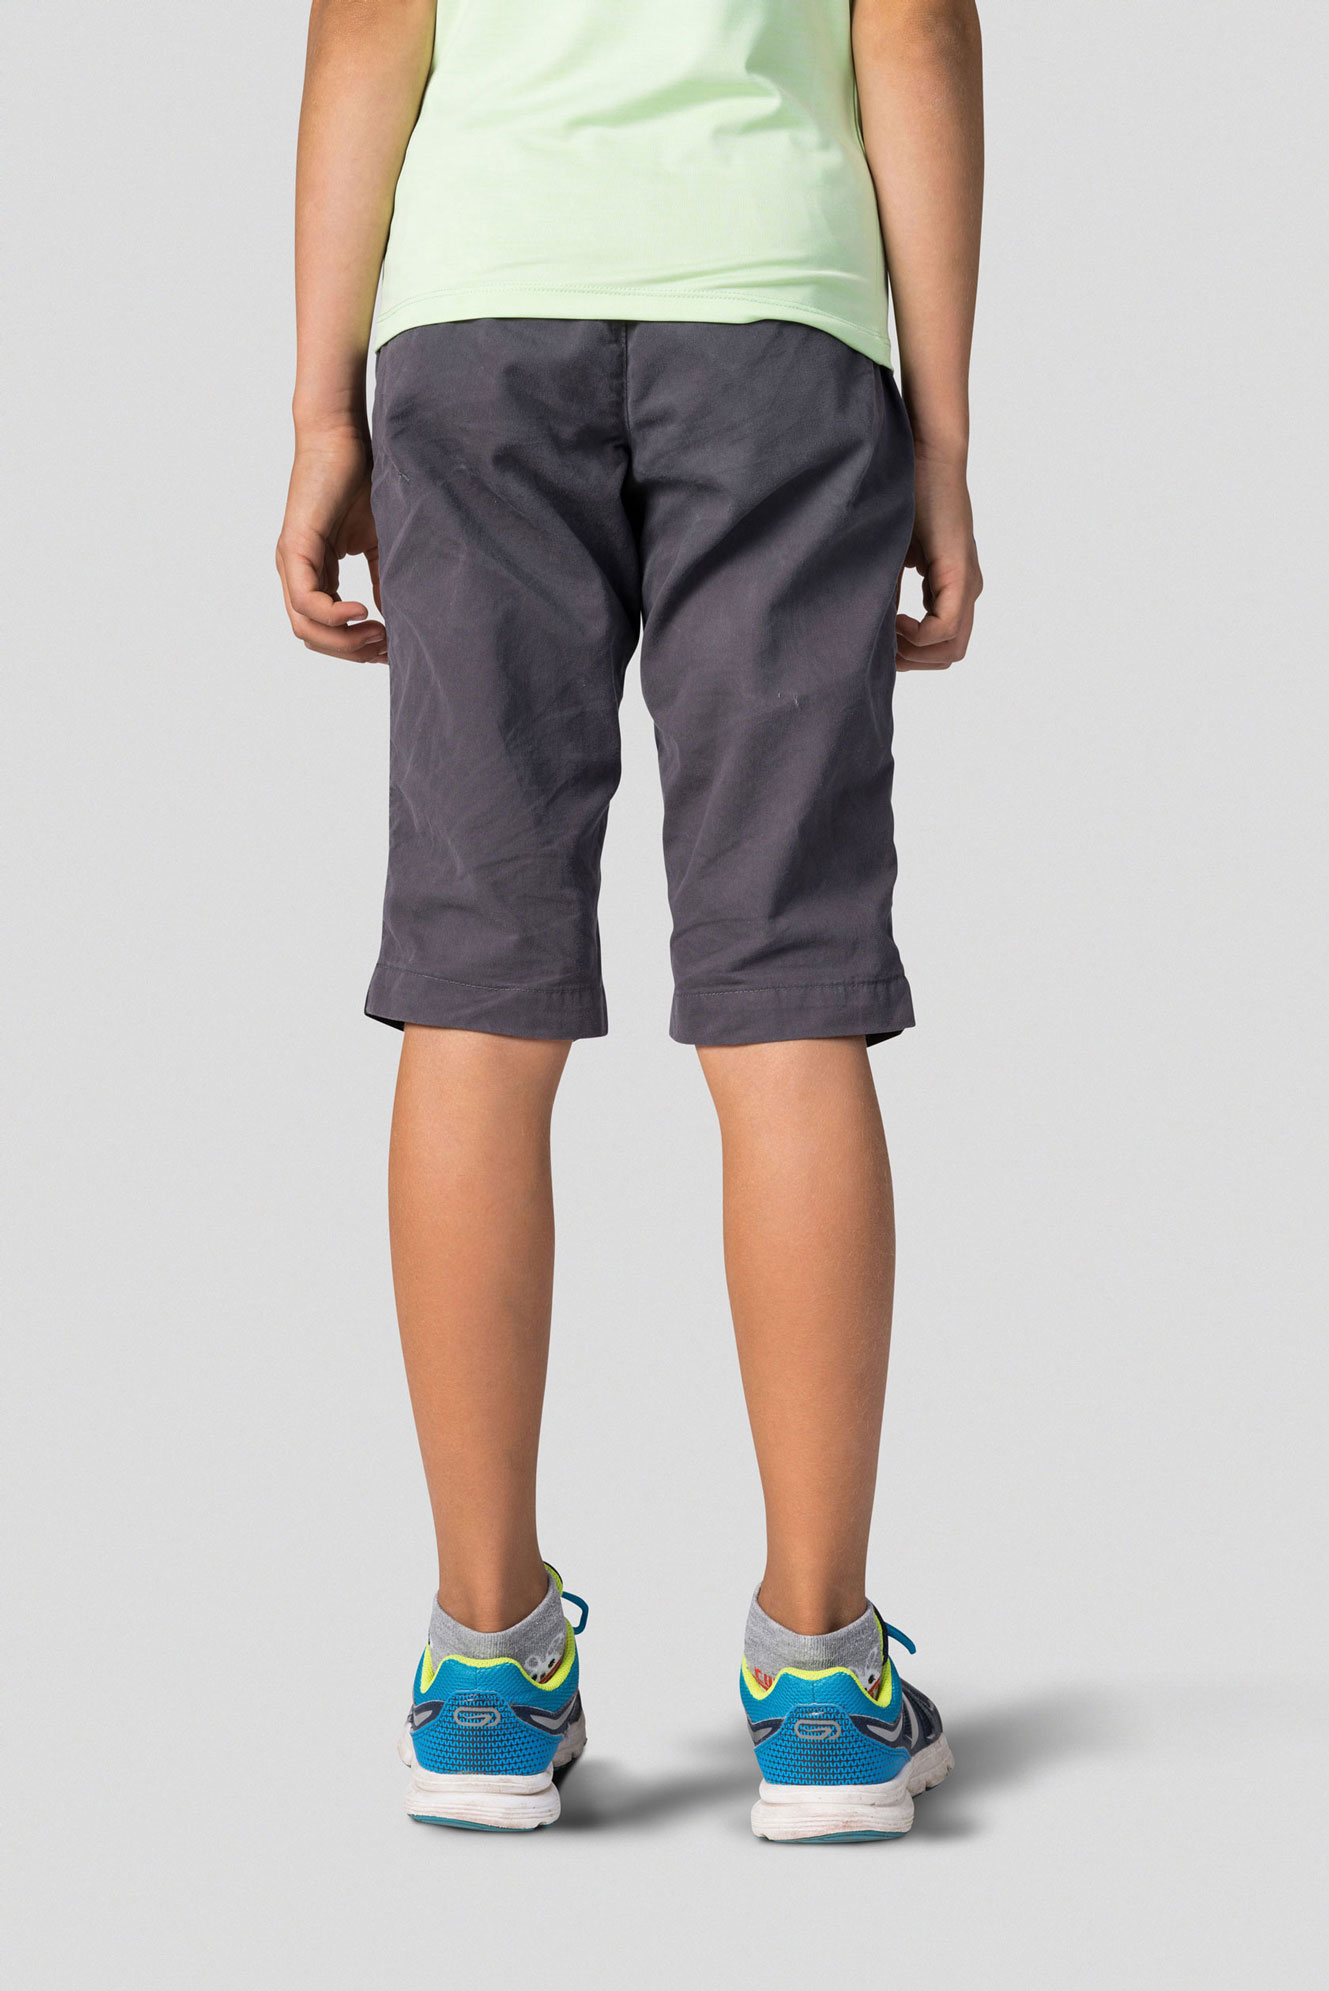 Kids’ outdoor Capri pants